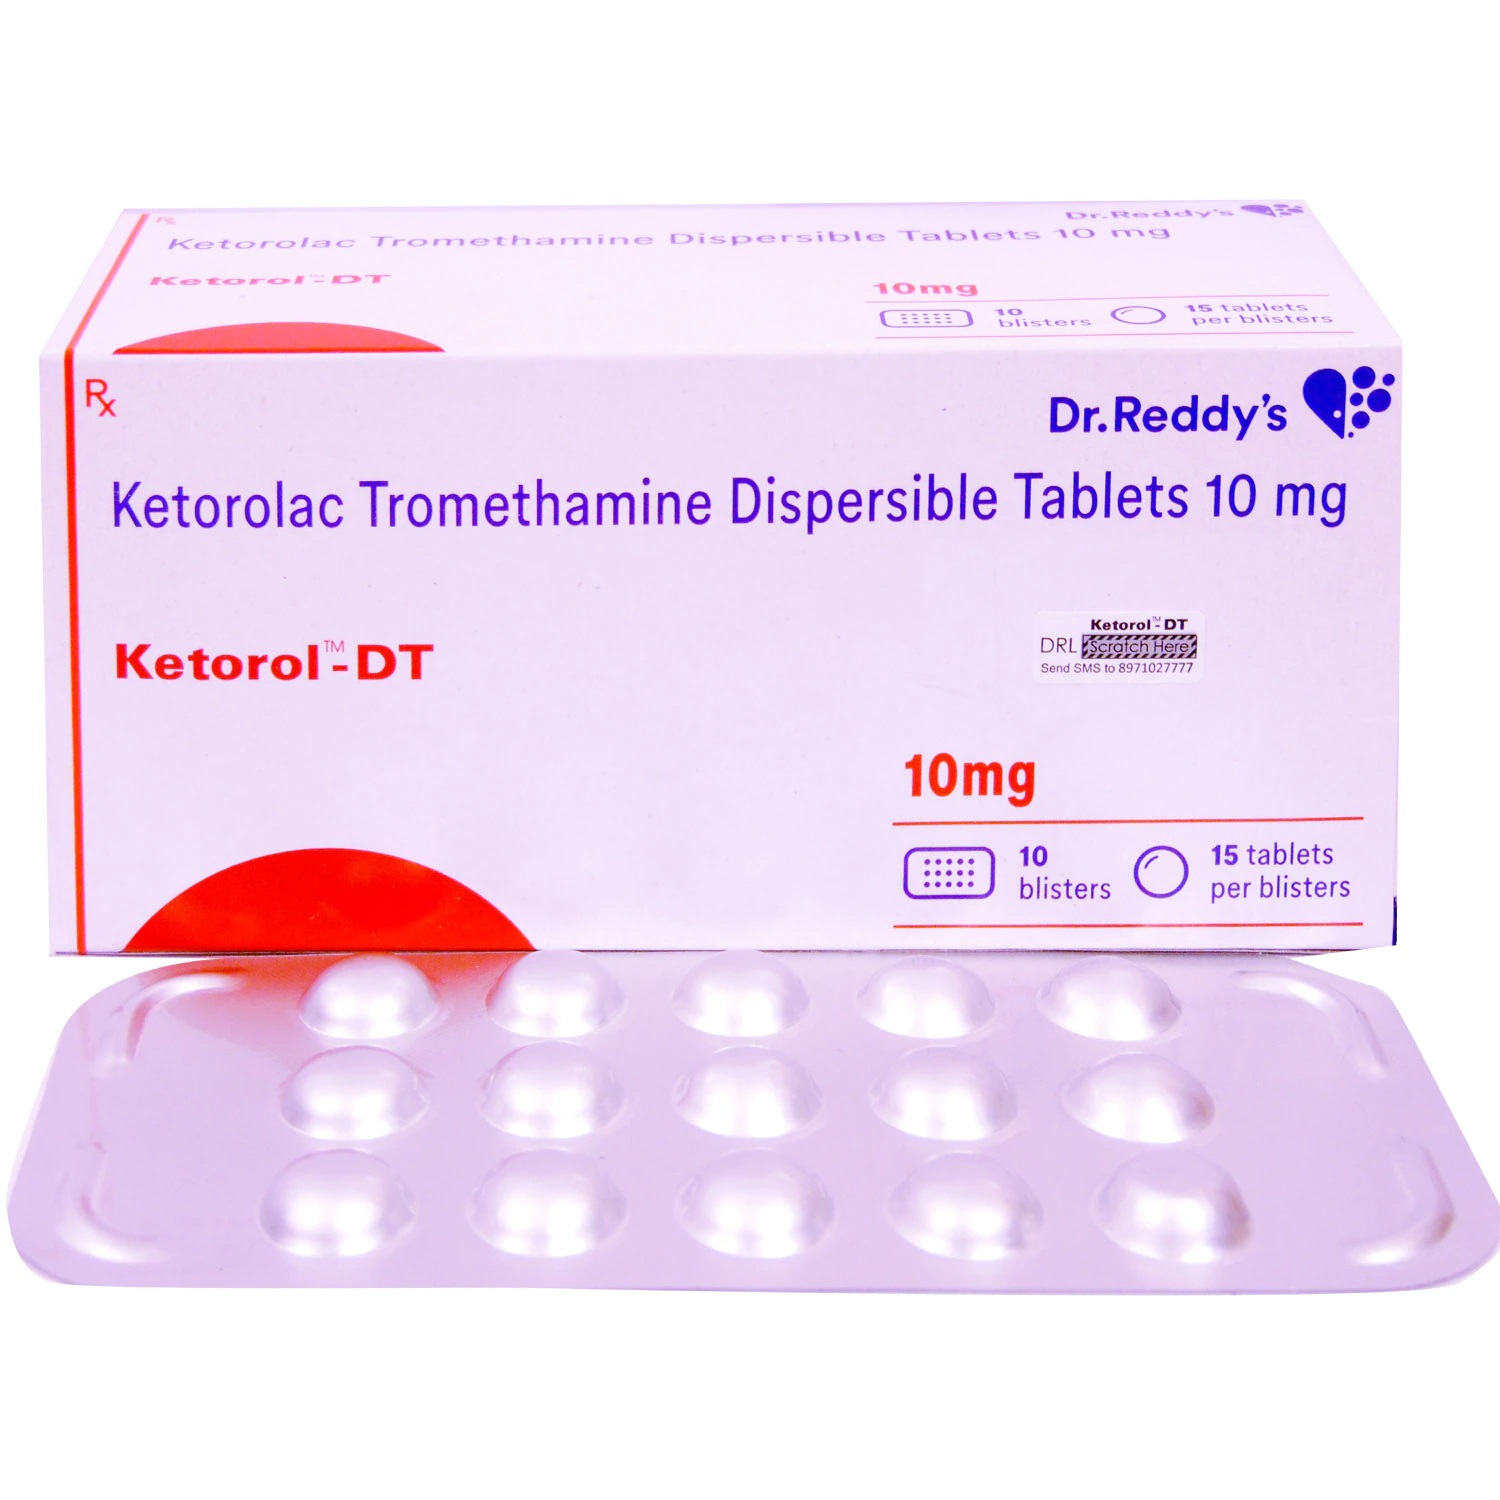 Ketorol Dt Tablet | ketorolac 10 mg | Uses | Doses | Benefits